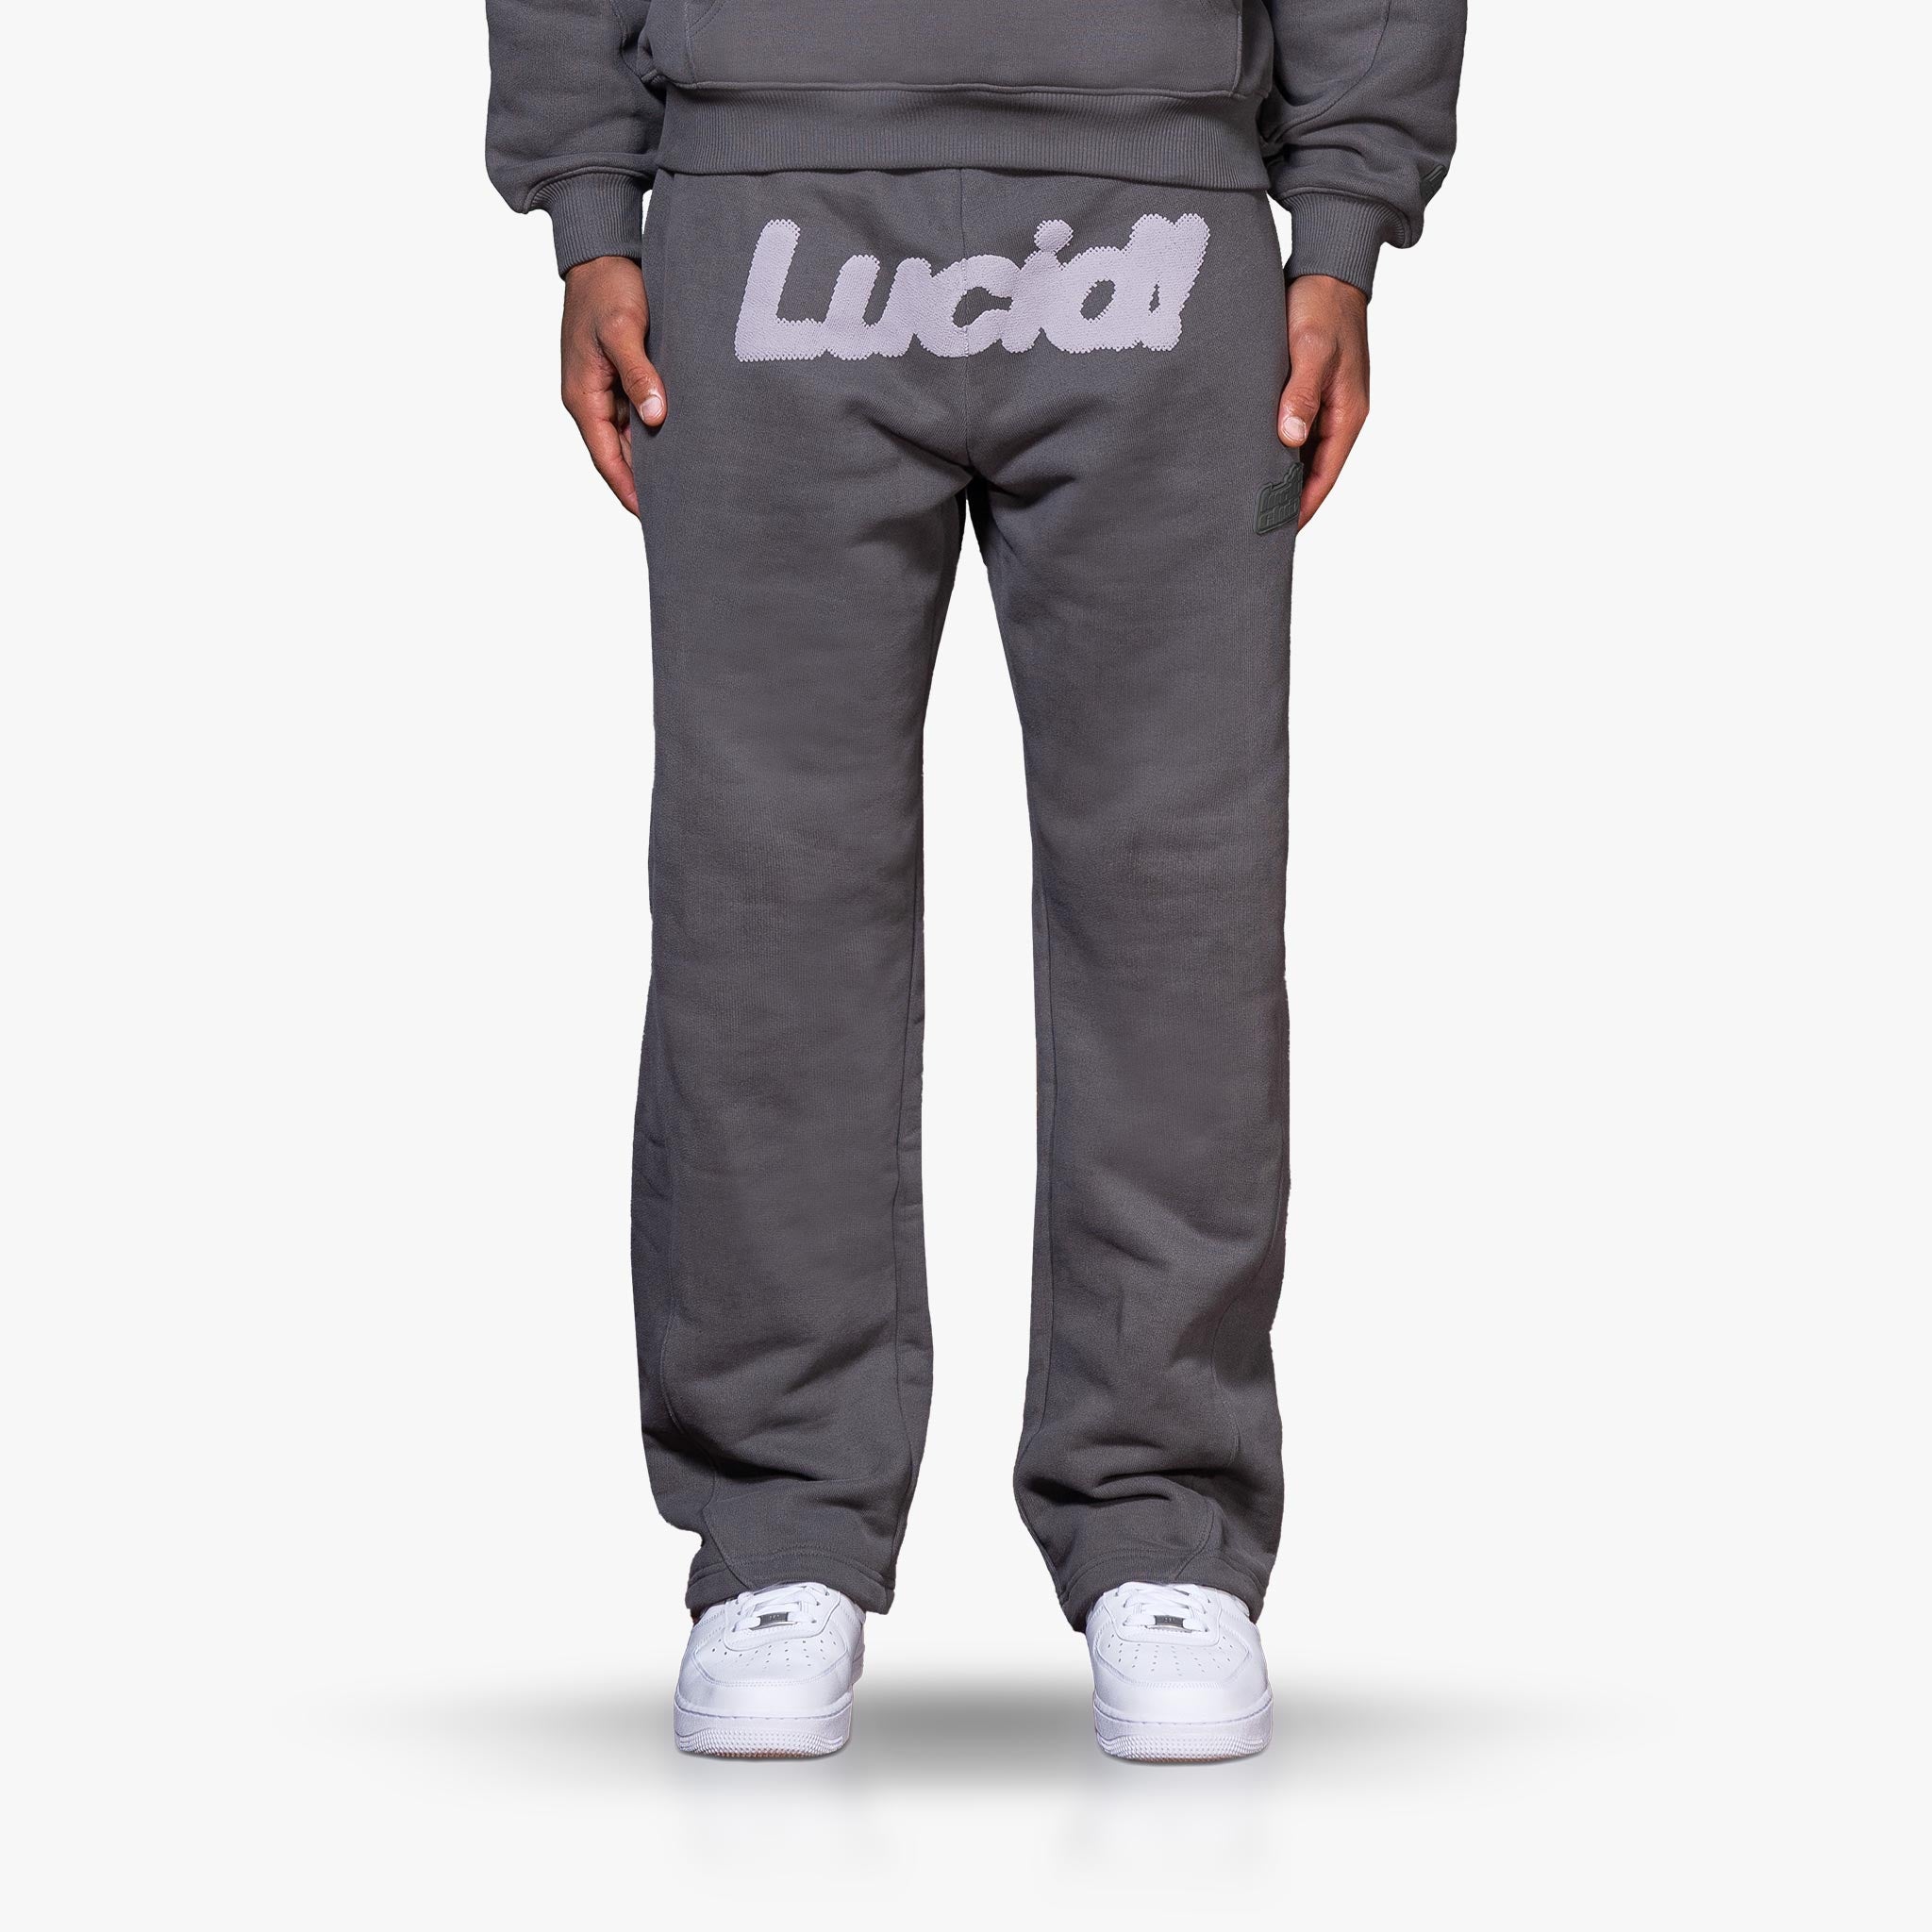 Lucid! Sweatpants Grey/Grey - Lucid Club